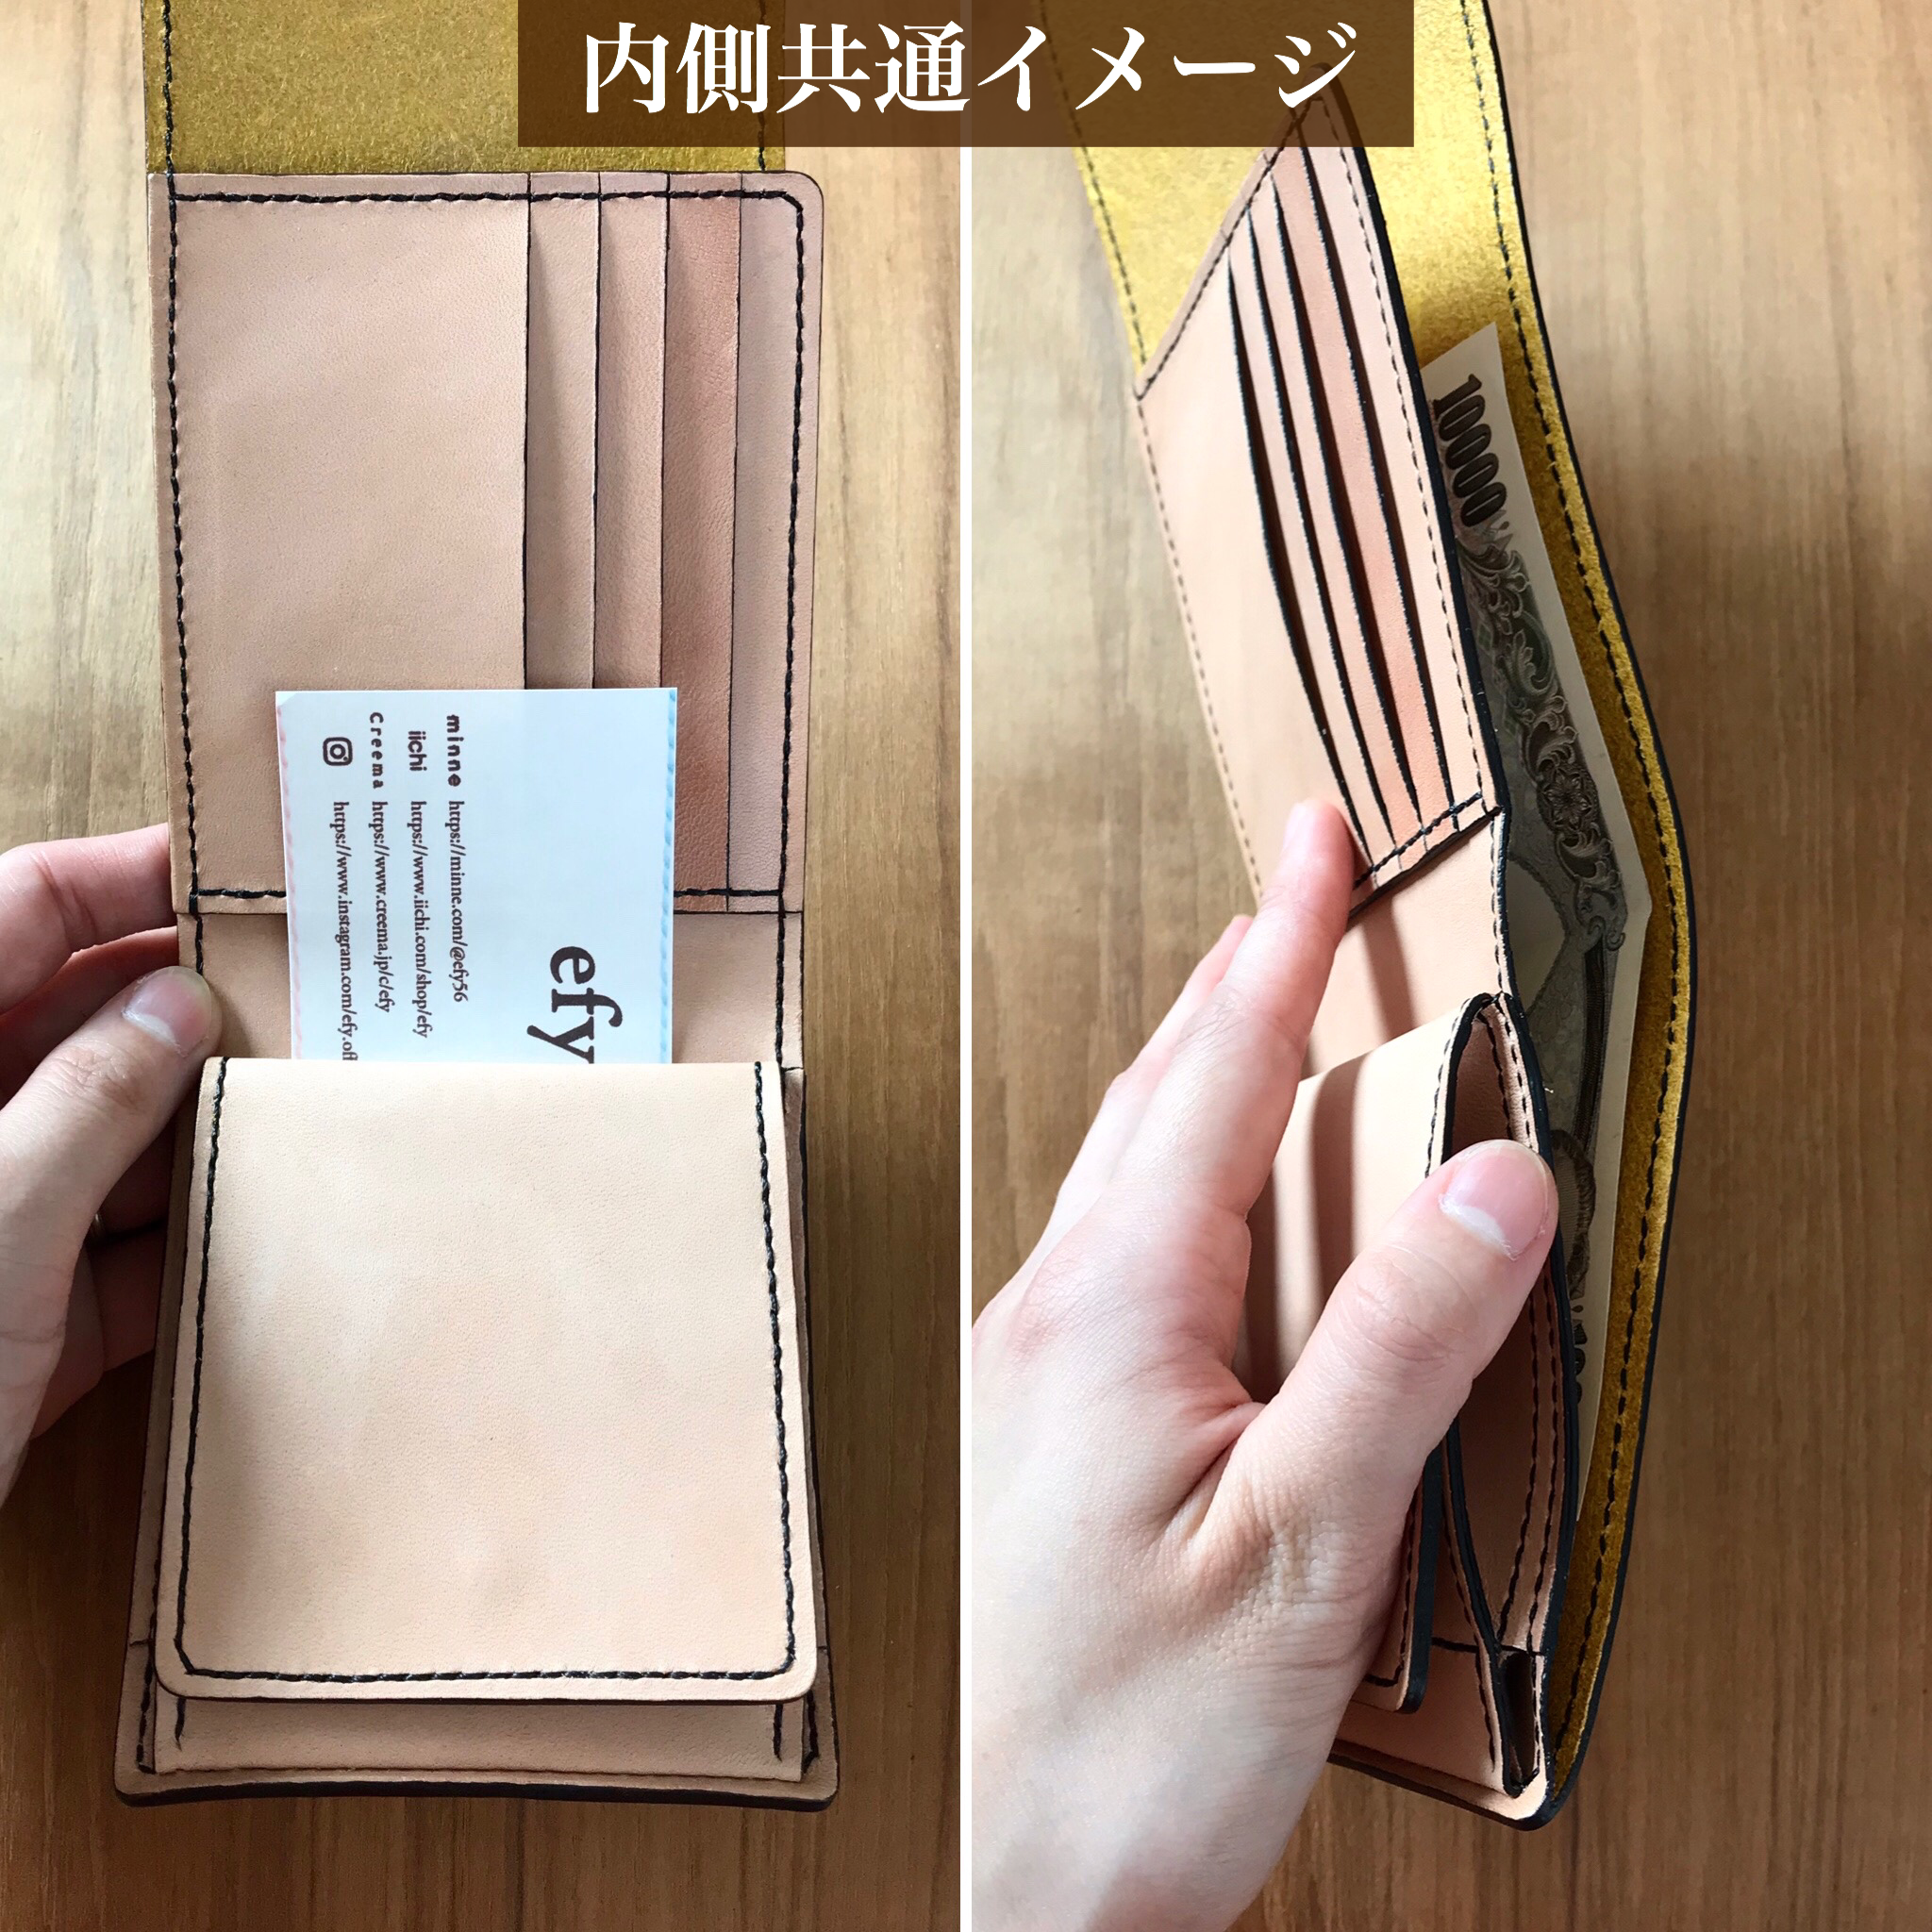 革の宝石 ルガトーと栃木レザーを使った 使いやすい二つ折り財布 Iichi ハンドメイド クラフト作品 手仕事品の通販